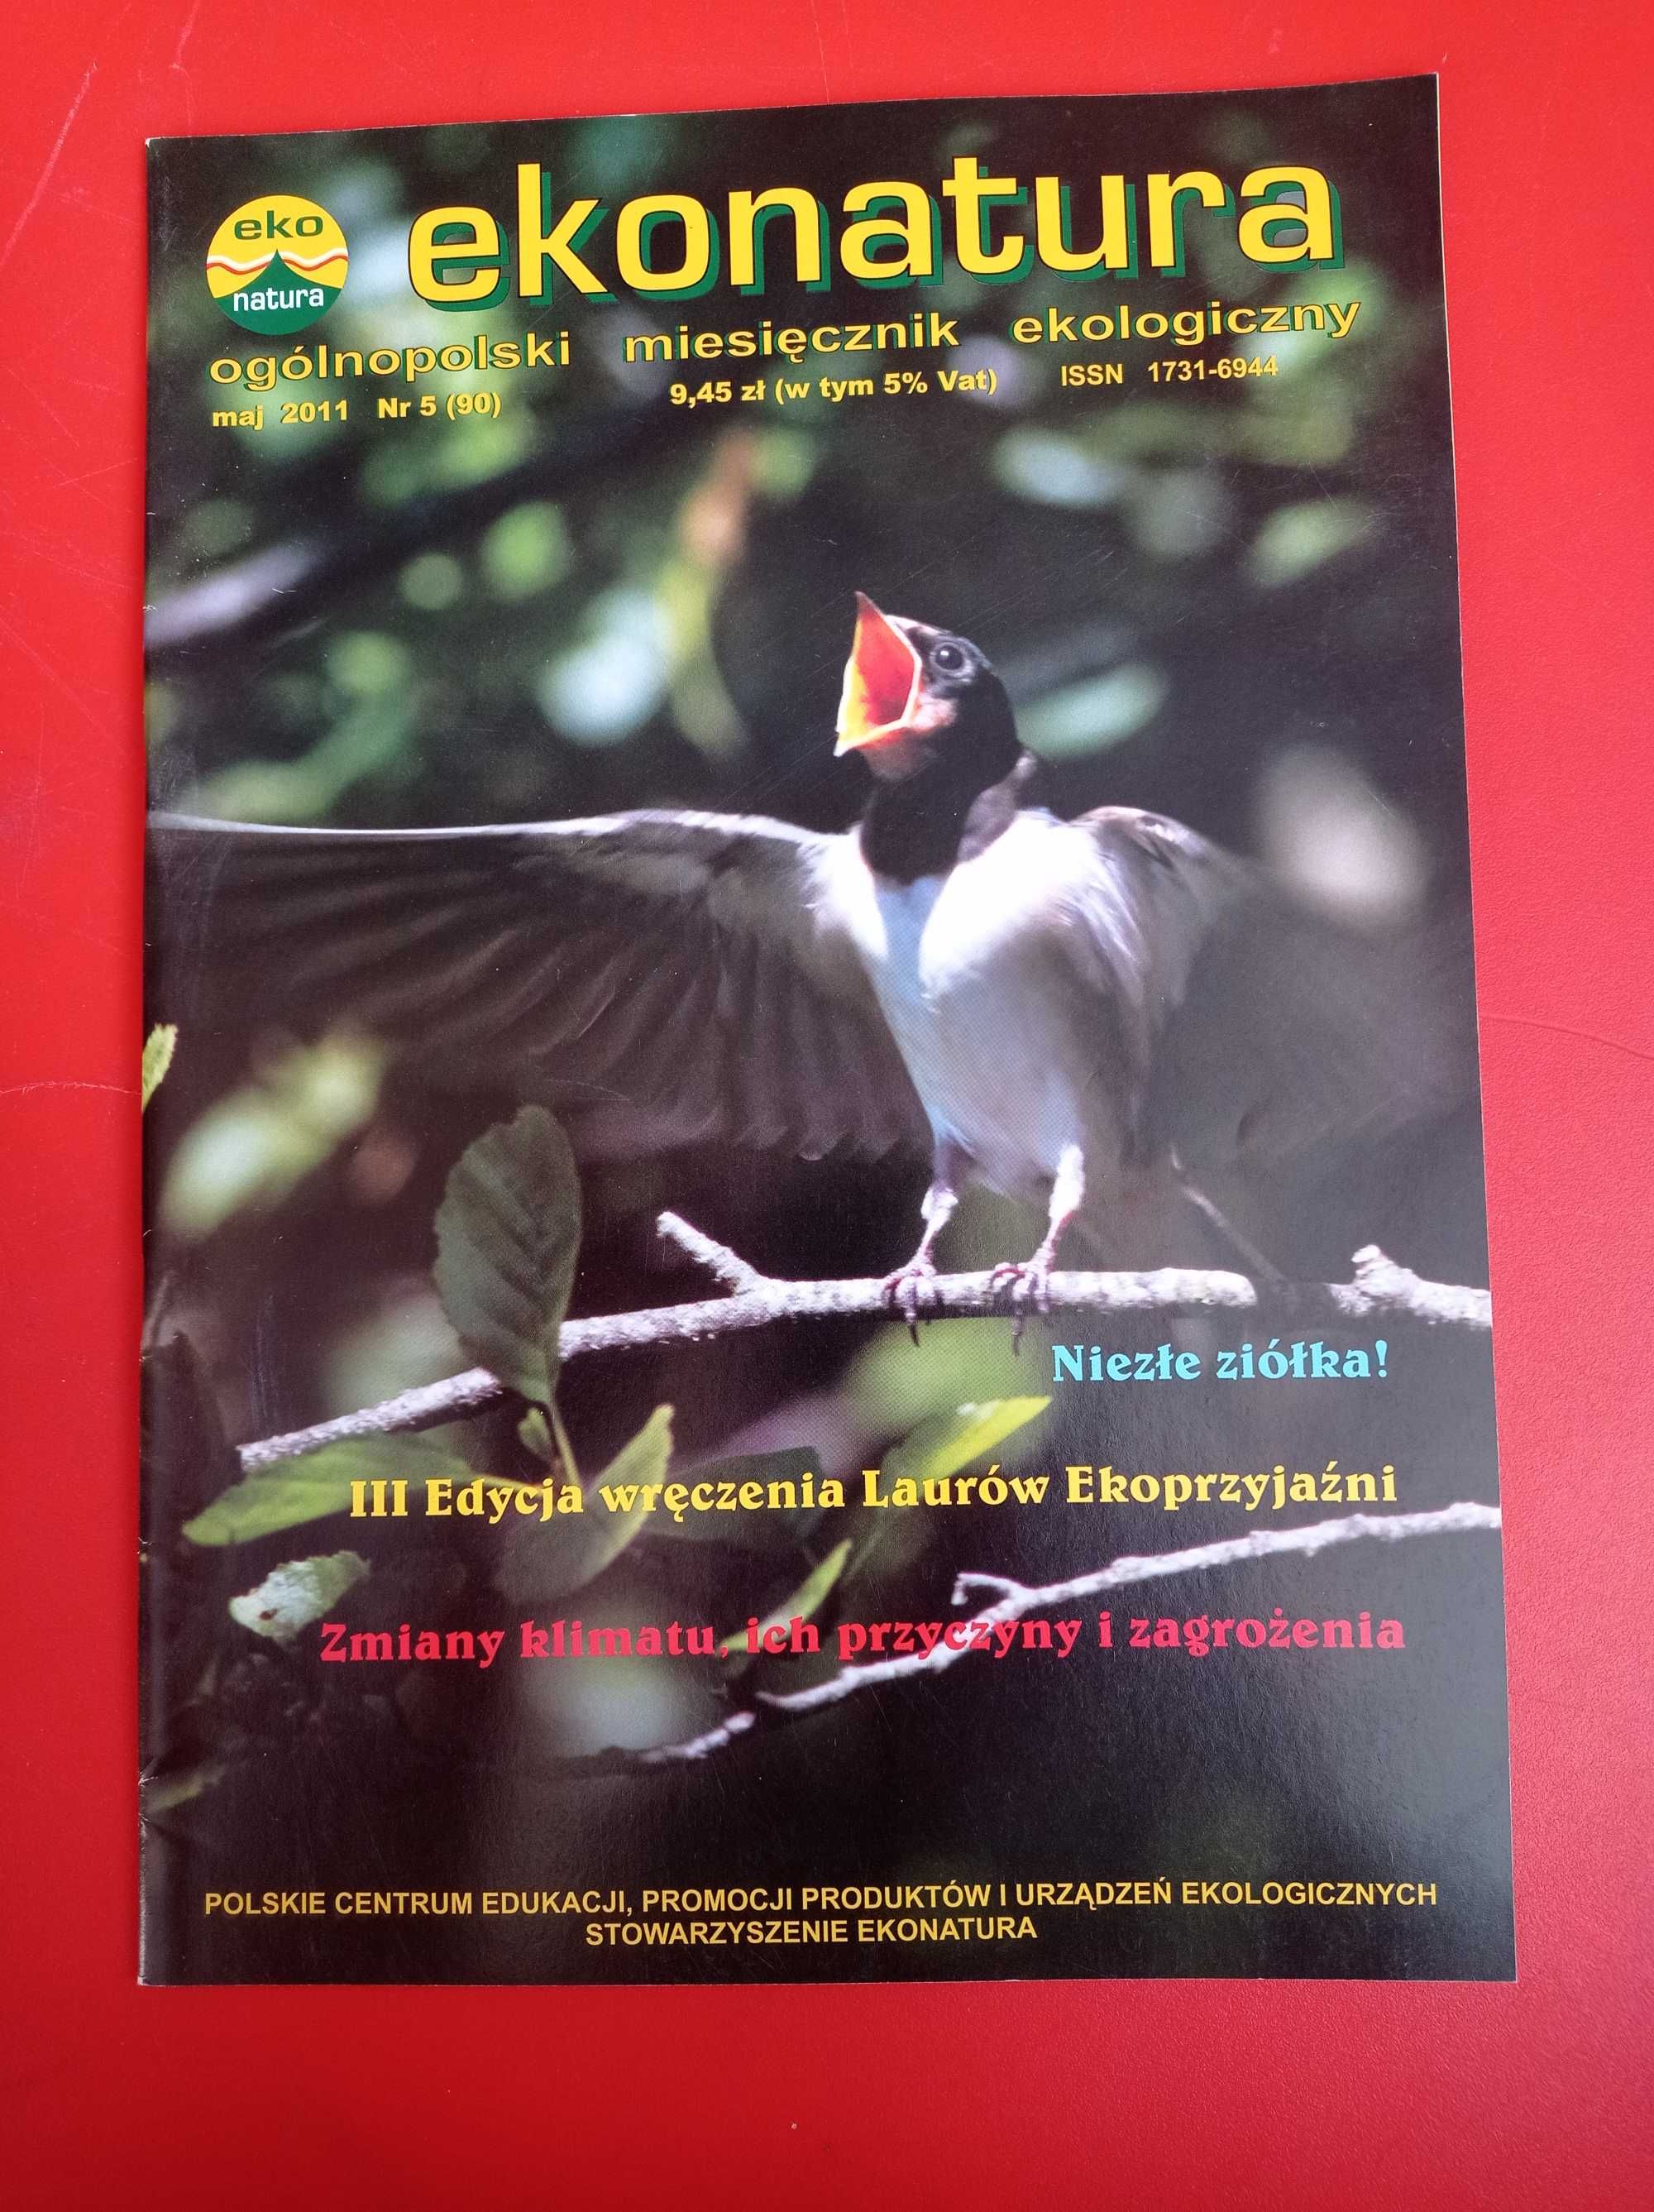 Ekonatura, miesięcznik ekologiczny, nr 5, maj 2014